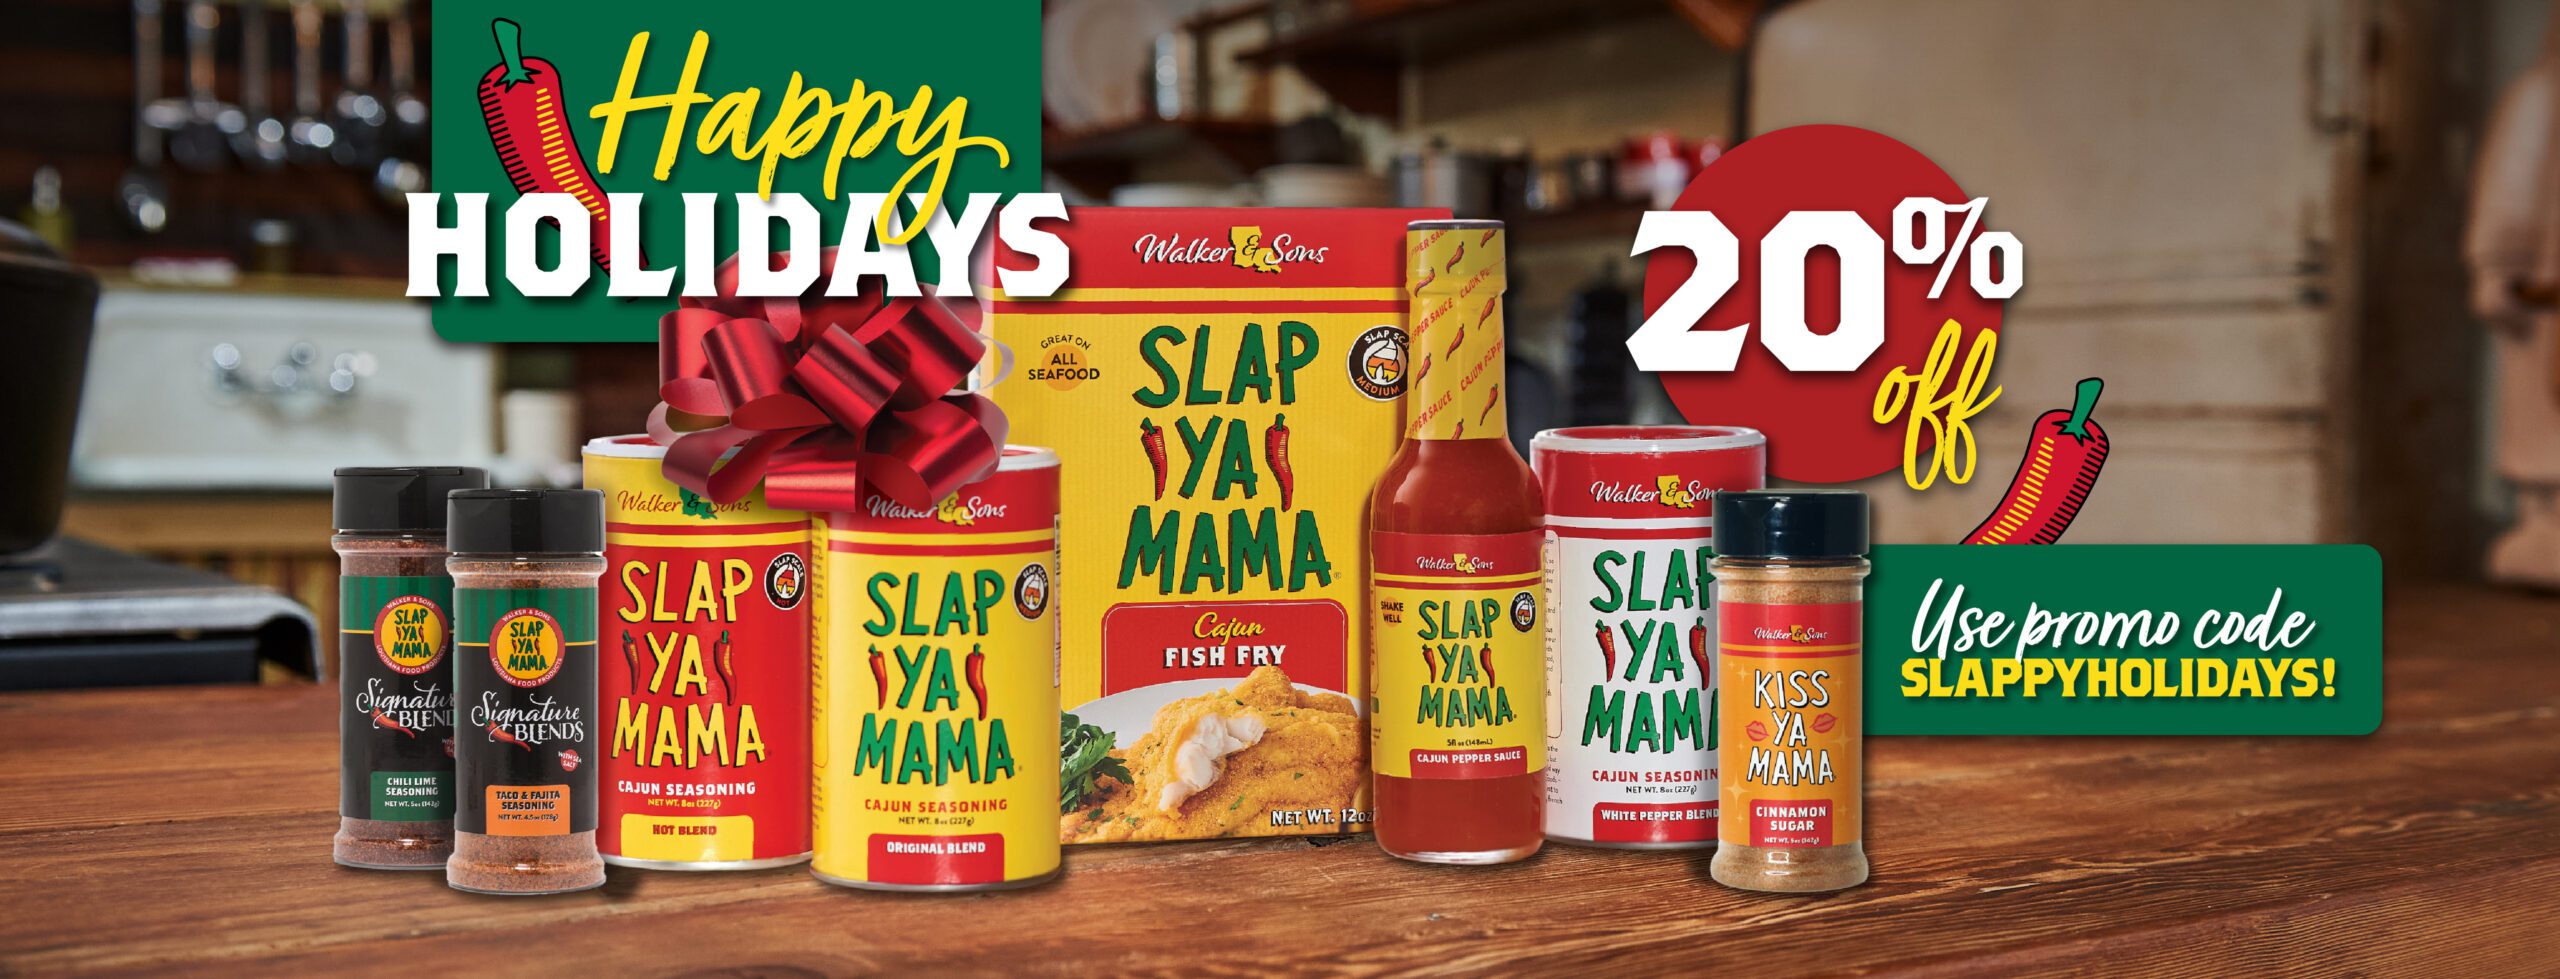 Slap Ya Mama Cajun Seasoning - Product Review - Simple Comfort Food